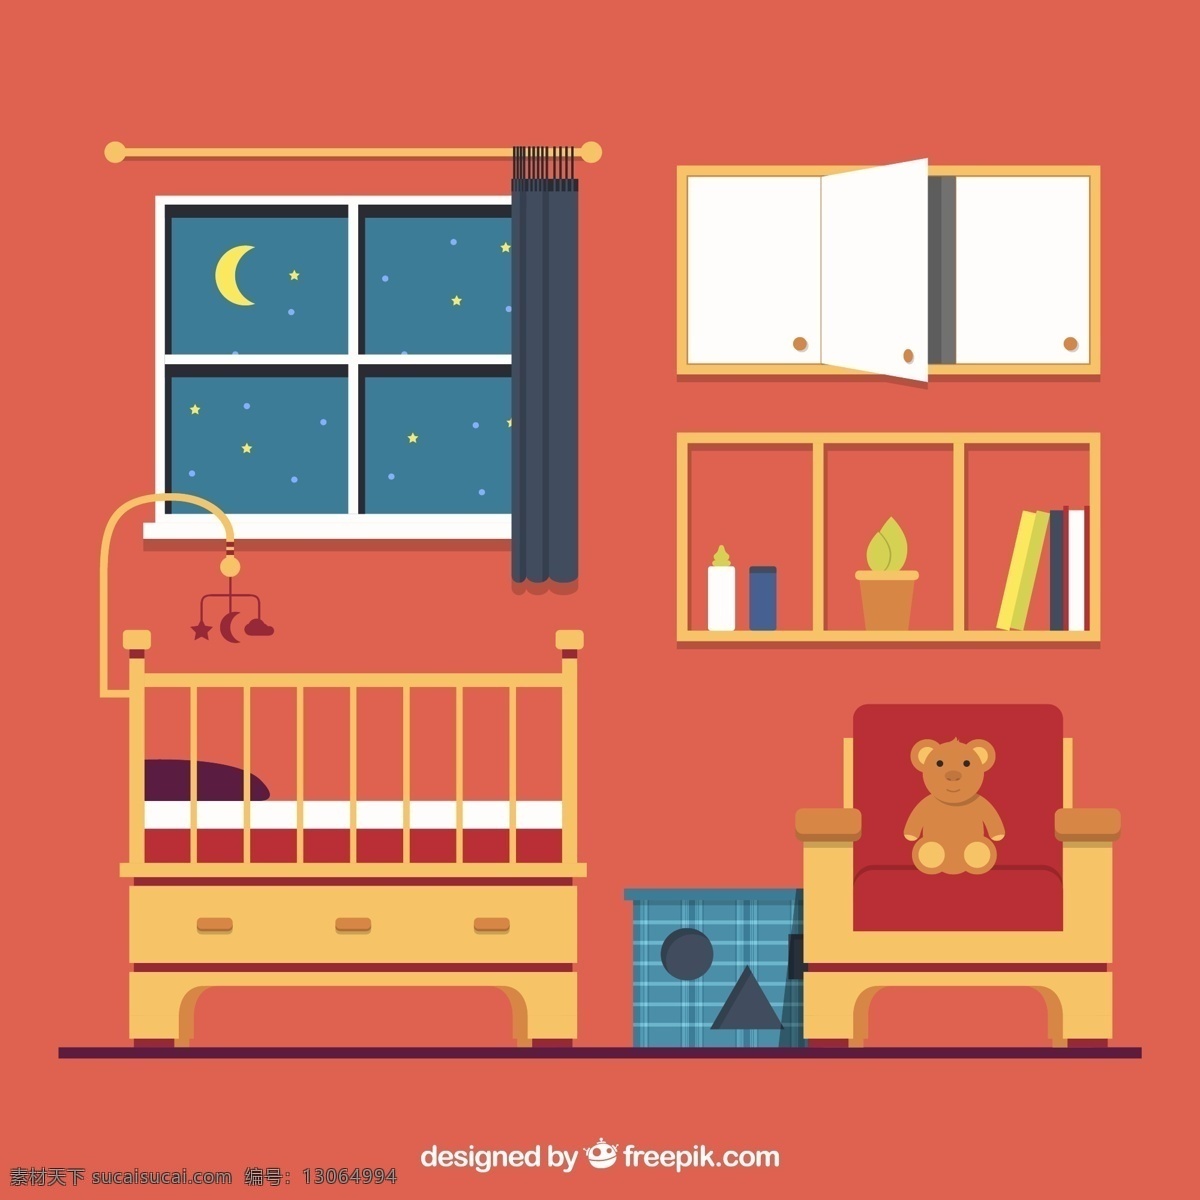 夜晚的婴儿房 夜晚 婴儿房 窗户 星星 月亮 窗帘 书架 婴儿床 生活用品 生活百科